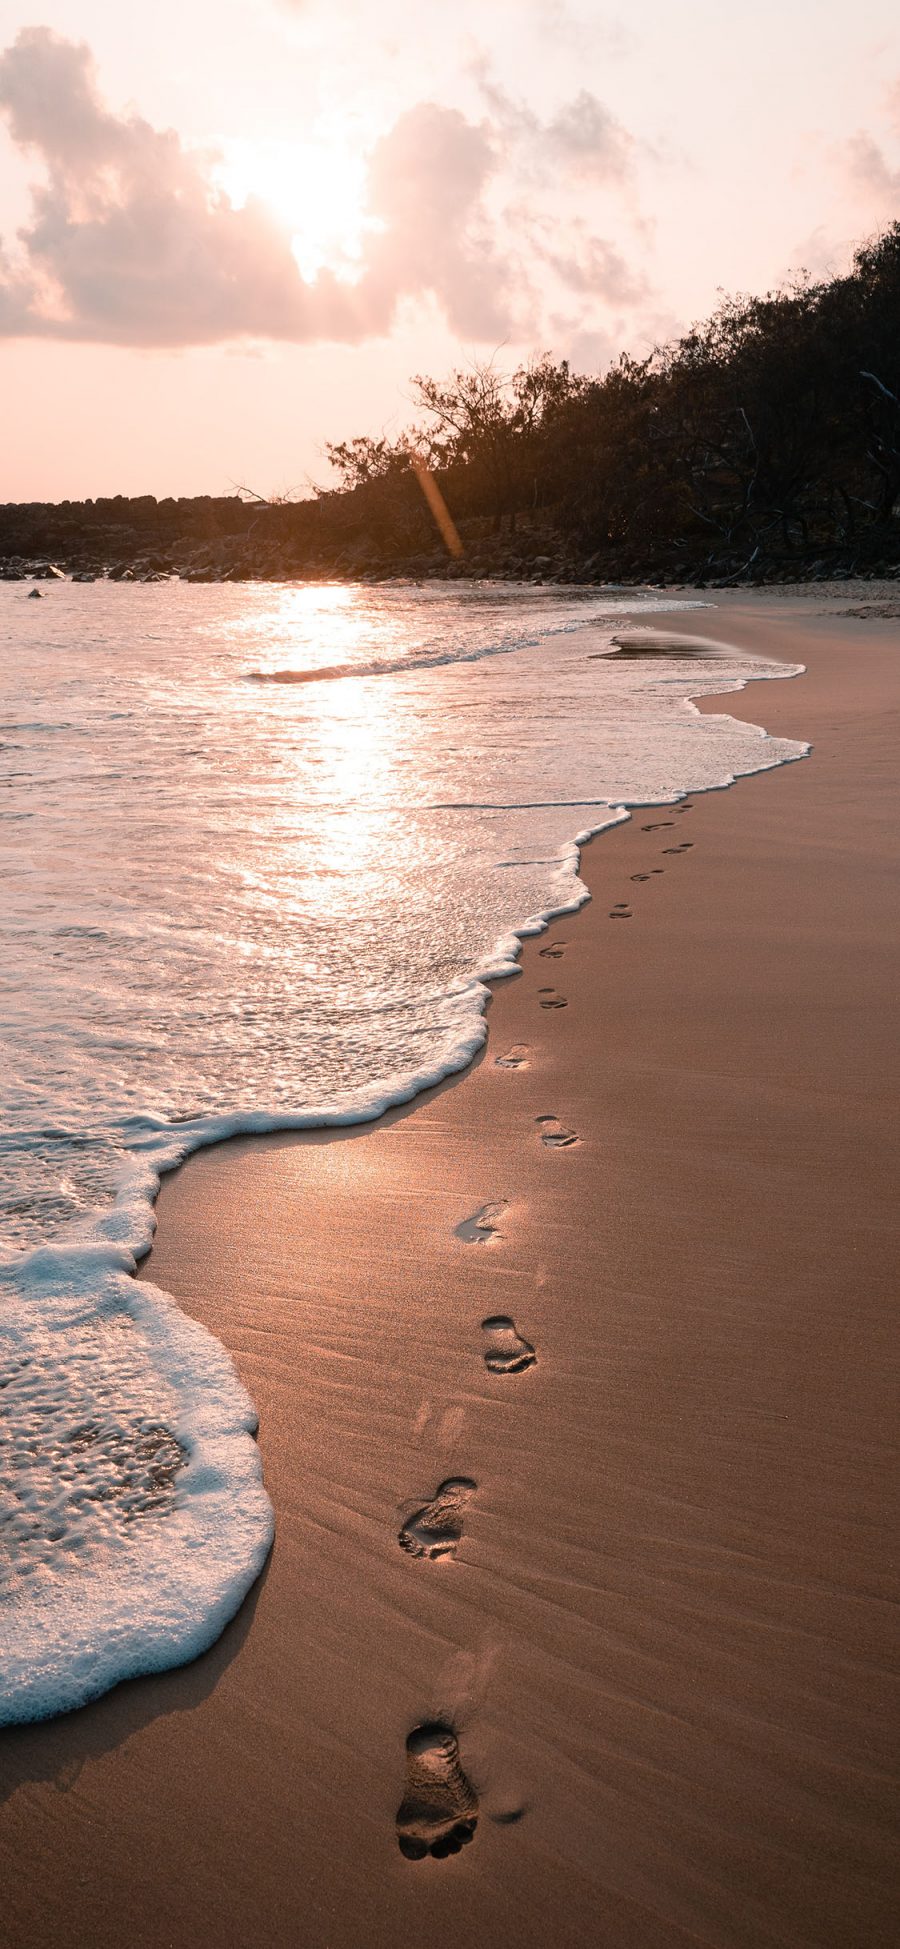 [2436×1125]大海 浪花 海滩 脚印 苹果手机壁纸图片